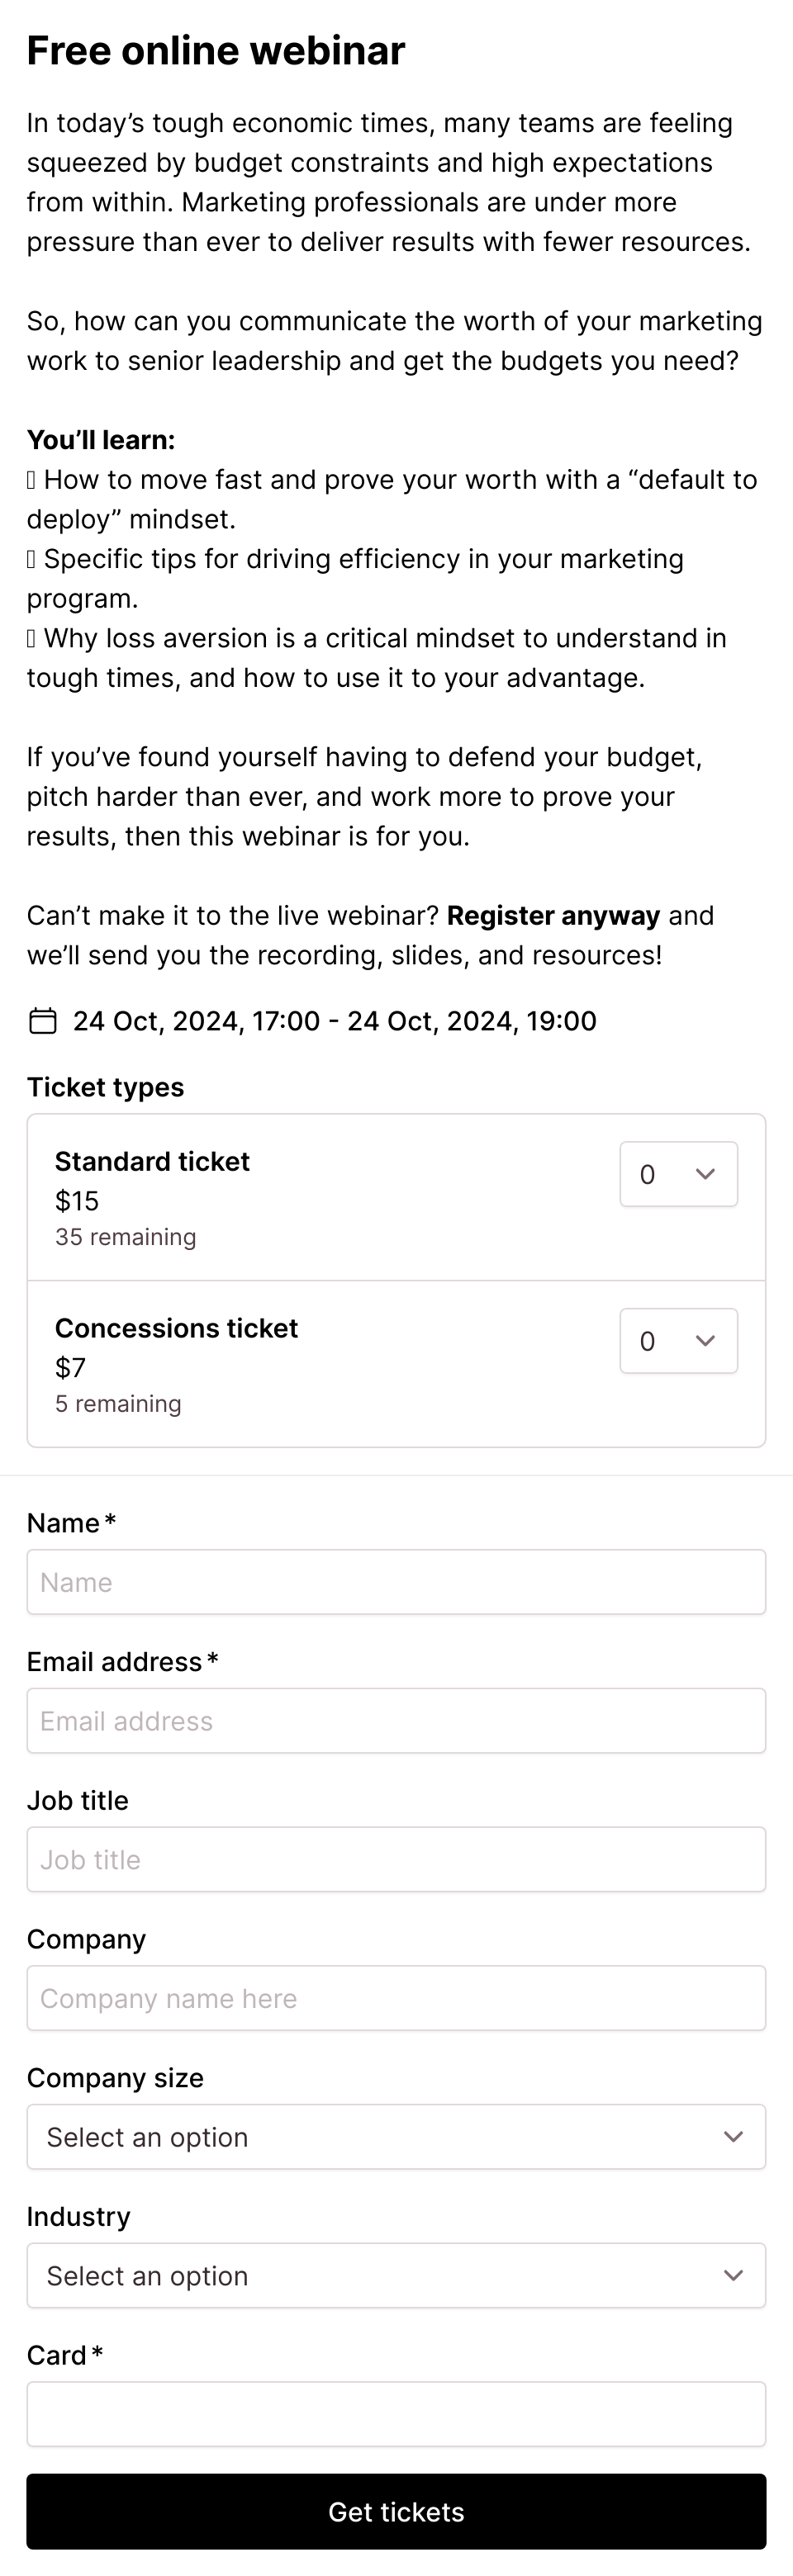 Free online webinar event registration form